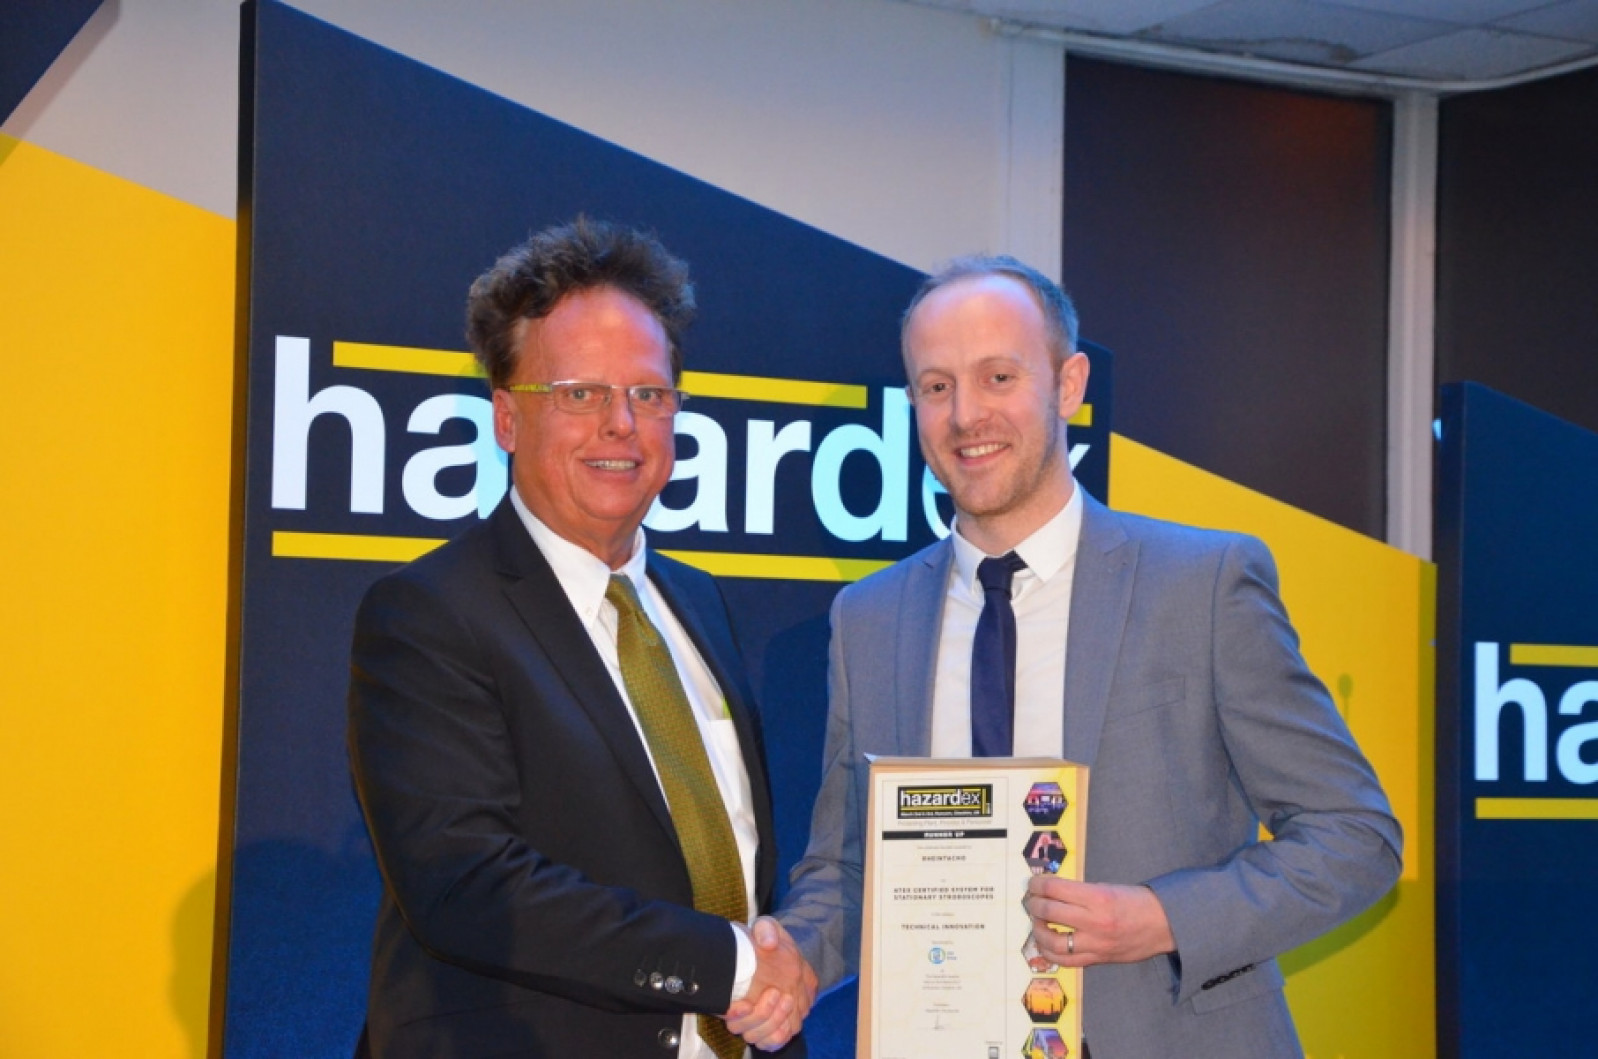 RHEINTACHO win award for technical innovation at The HazardEx Awards